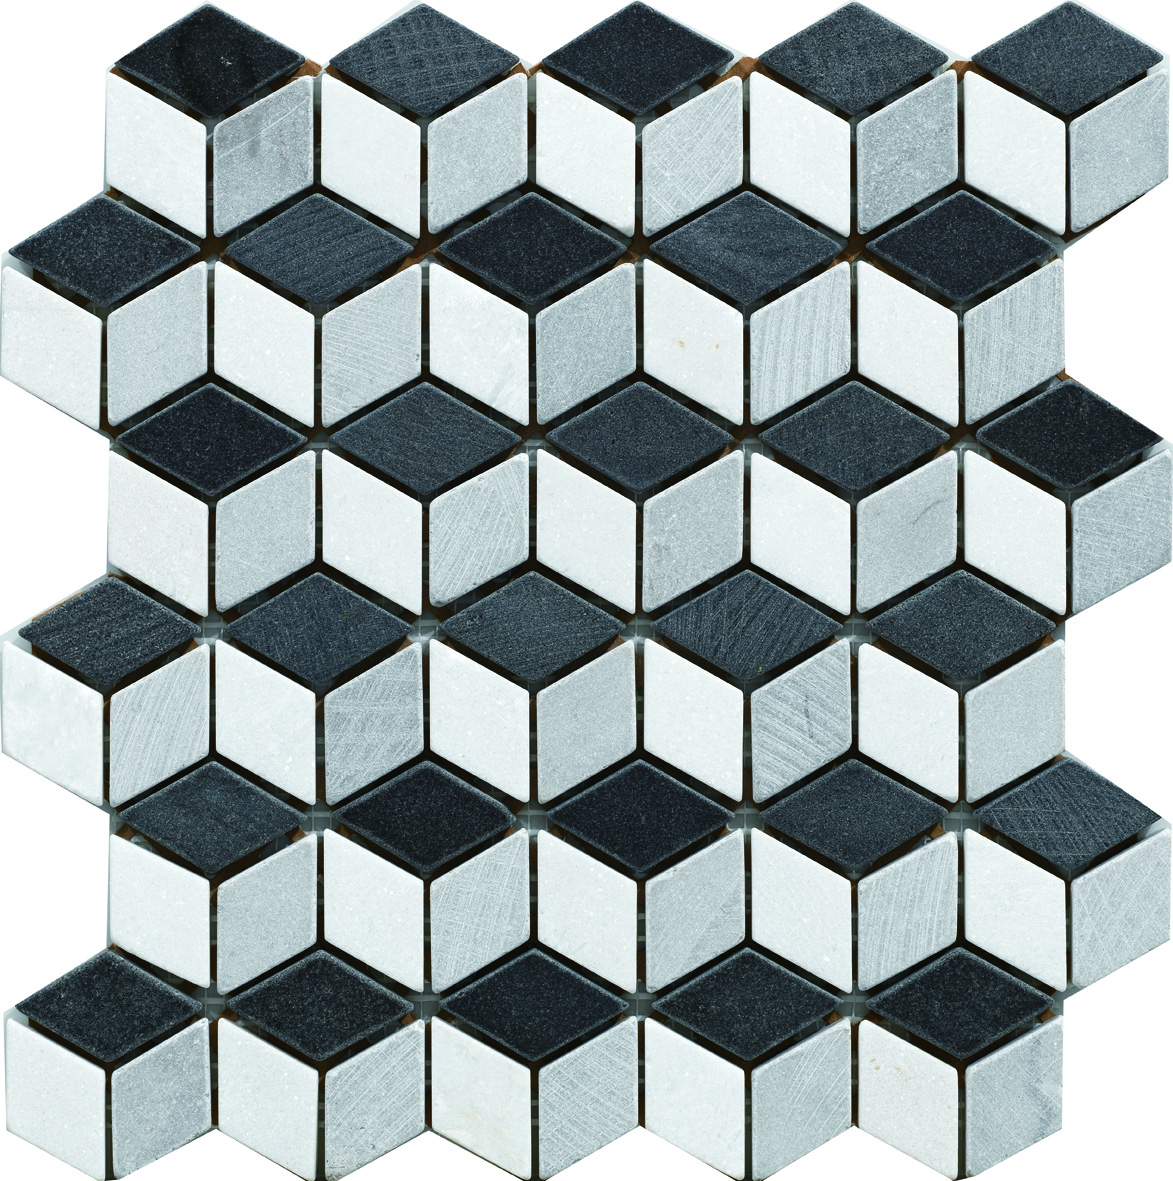 3d cubic pattern mosaic